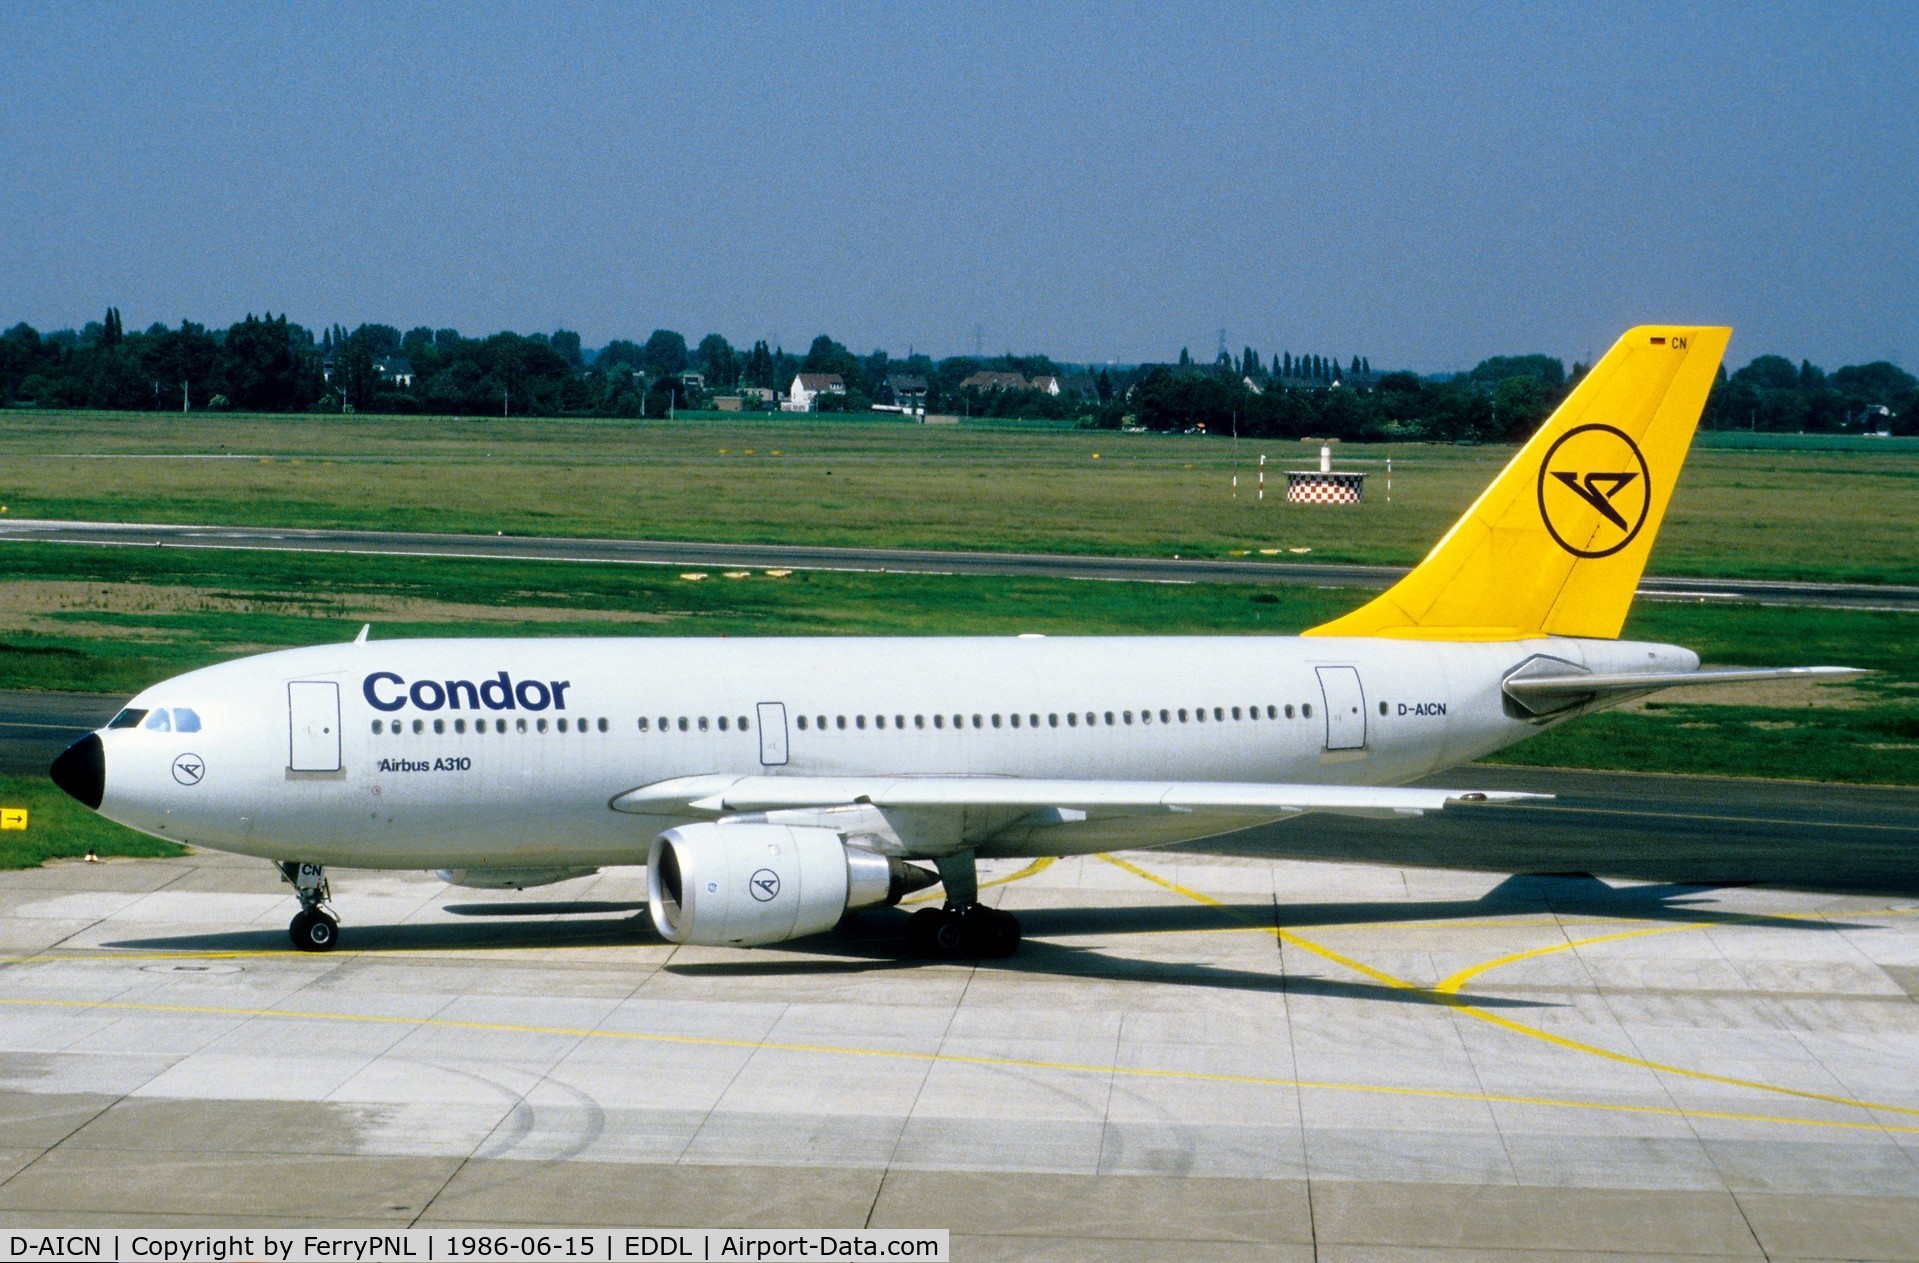 D-AICN, 1985 Airbus A310-203 C/N 359, Condor A310 arriving